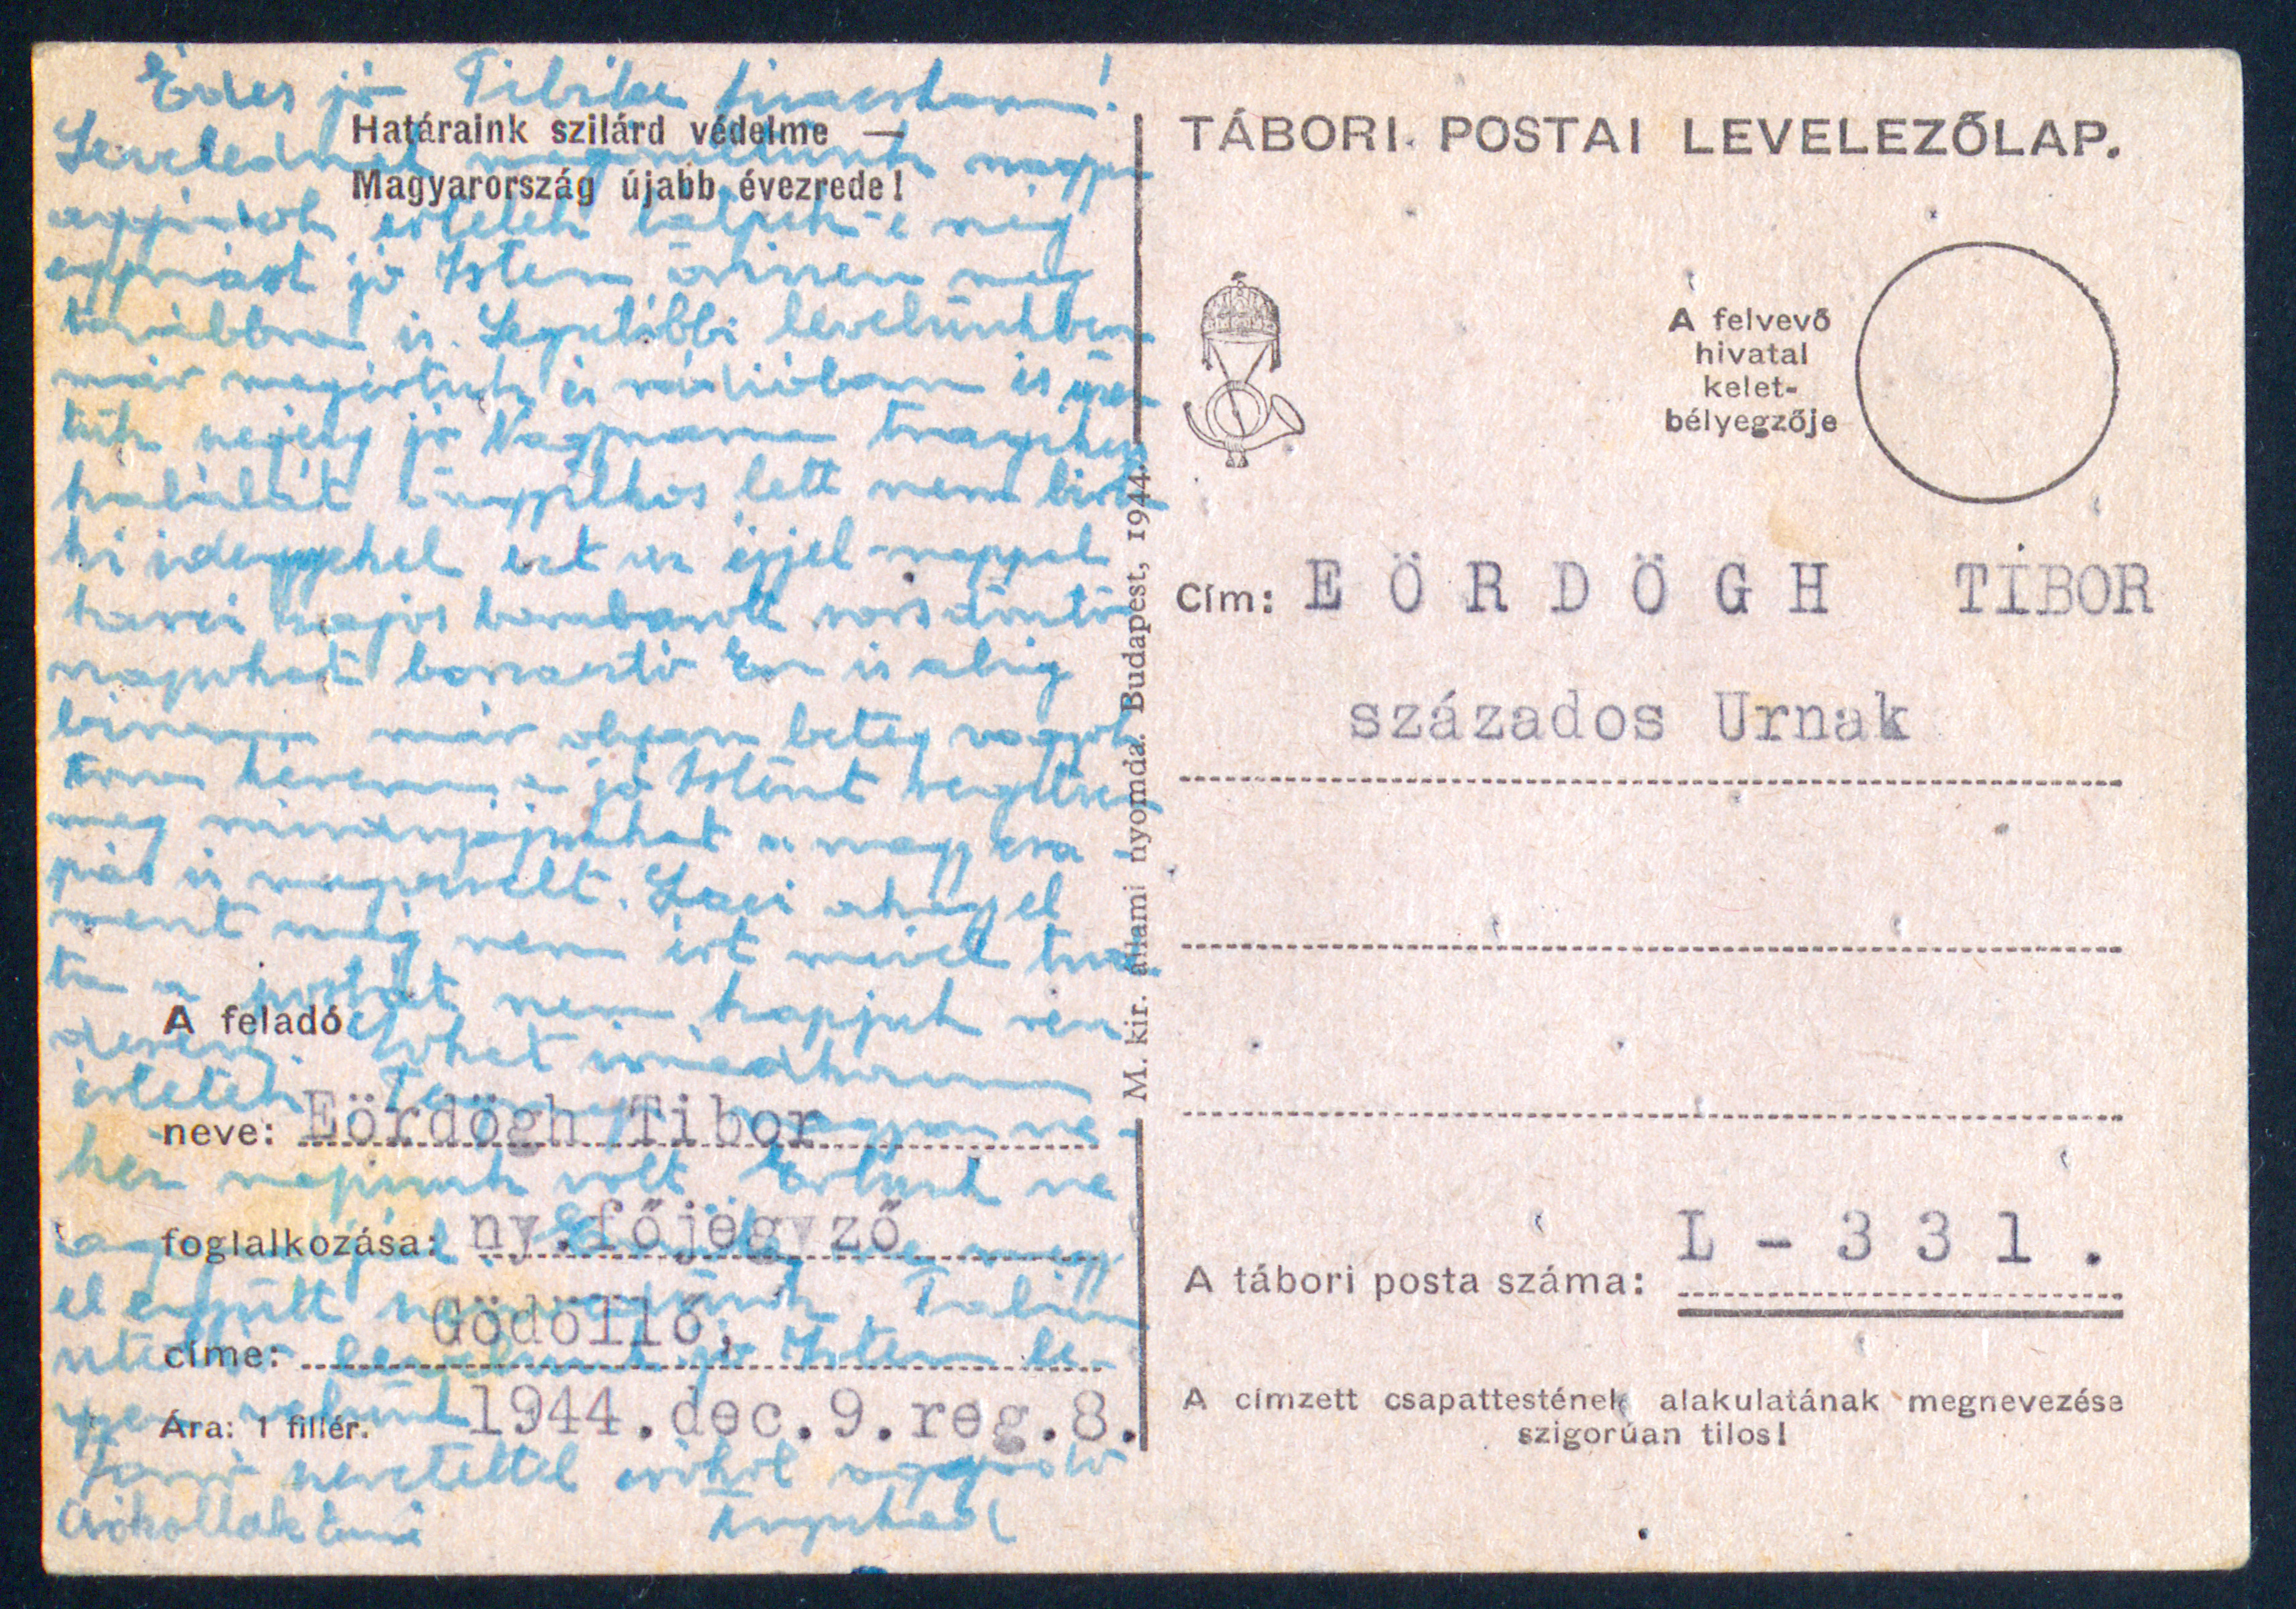 Tábori postai levelezőlap (L - 331), Eördögh Tibor százados úrnak, 1944. december 9.